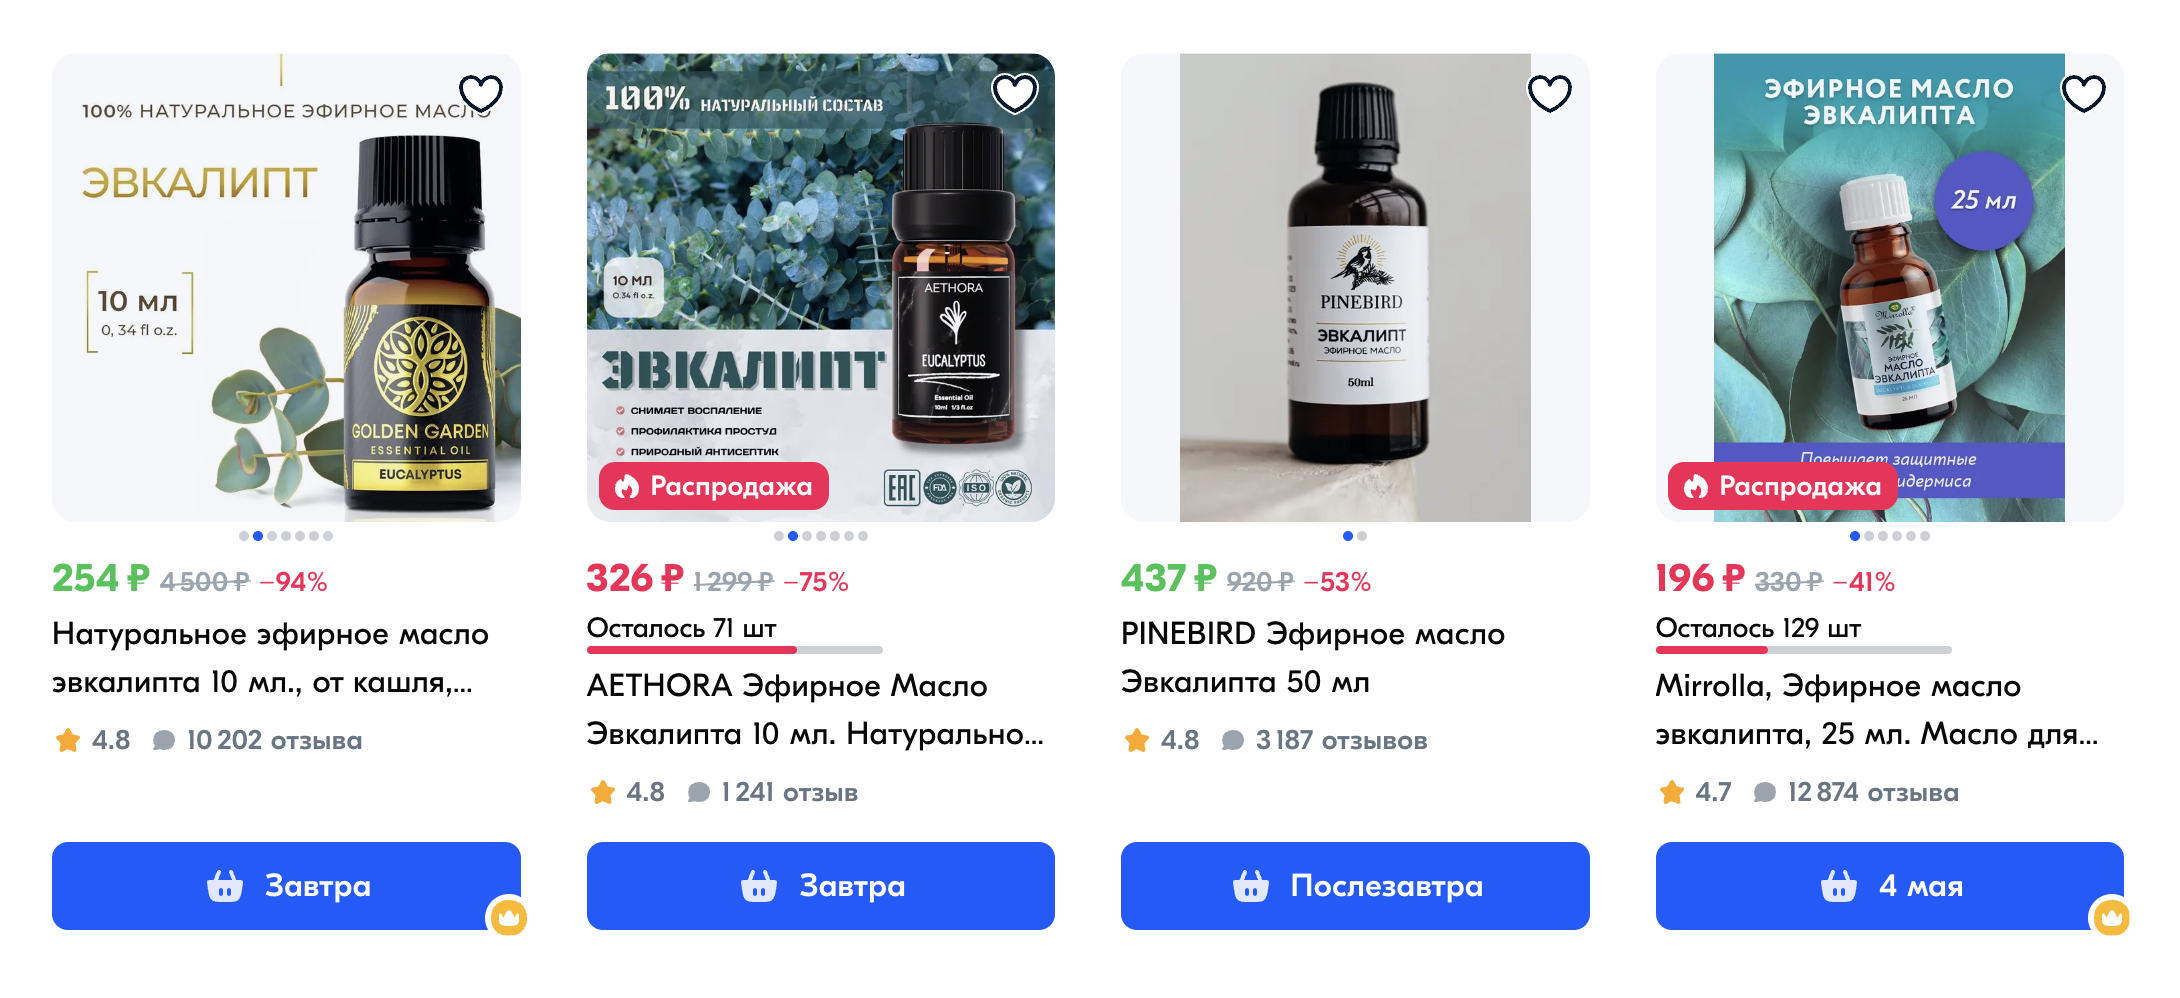 Эфирное масло можно купить в любой аптеке или на маркетплейсе. Источник: ozon.ru